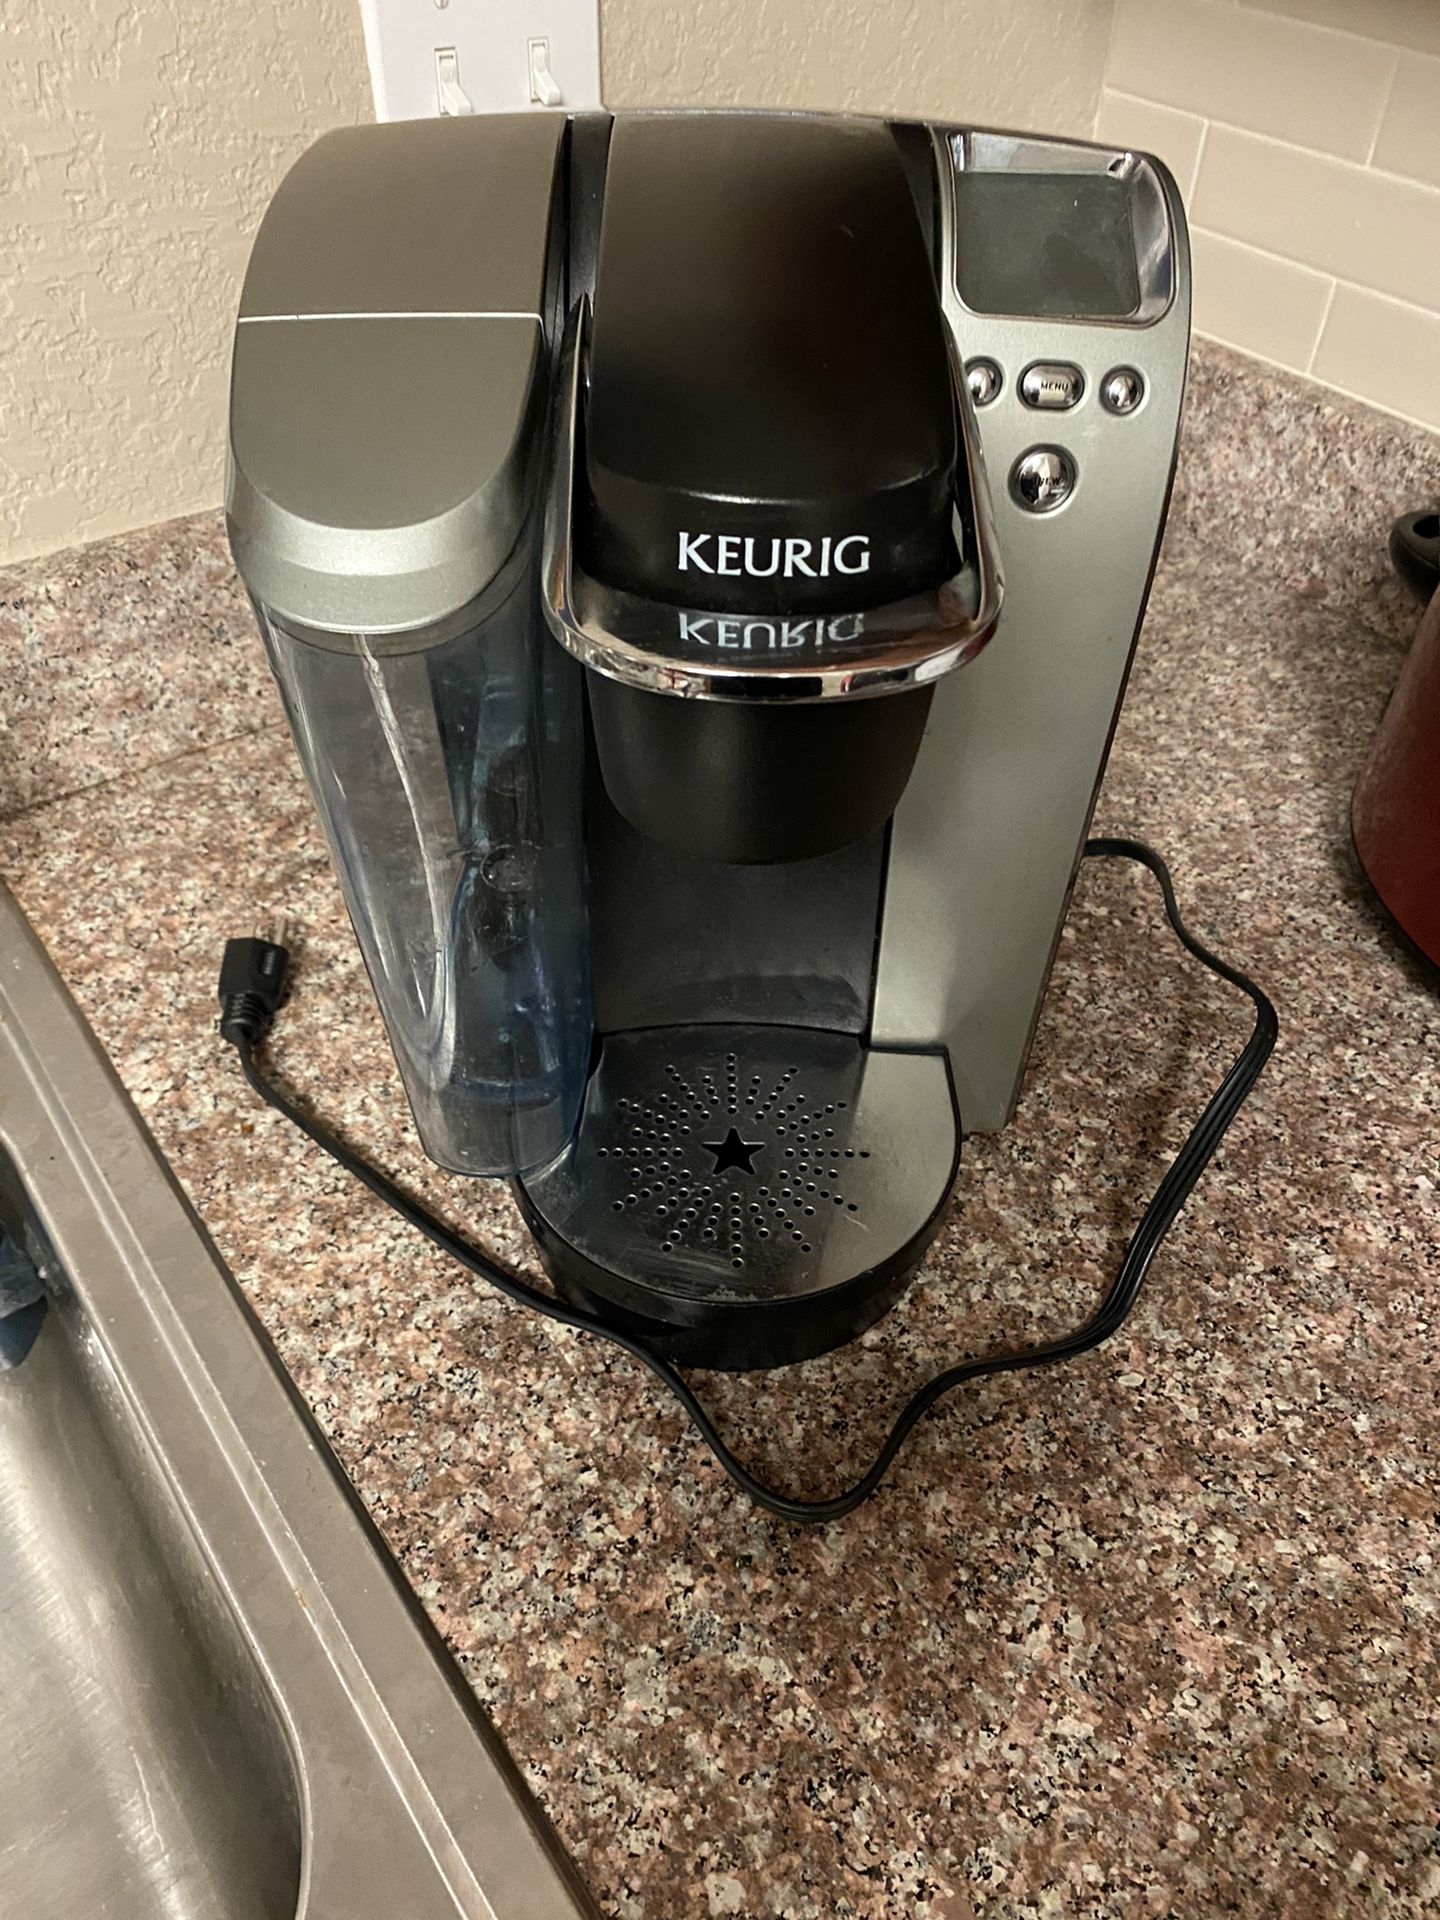 Keurig single cup coffee maker